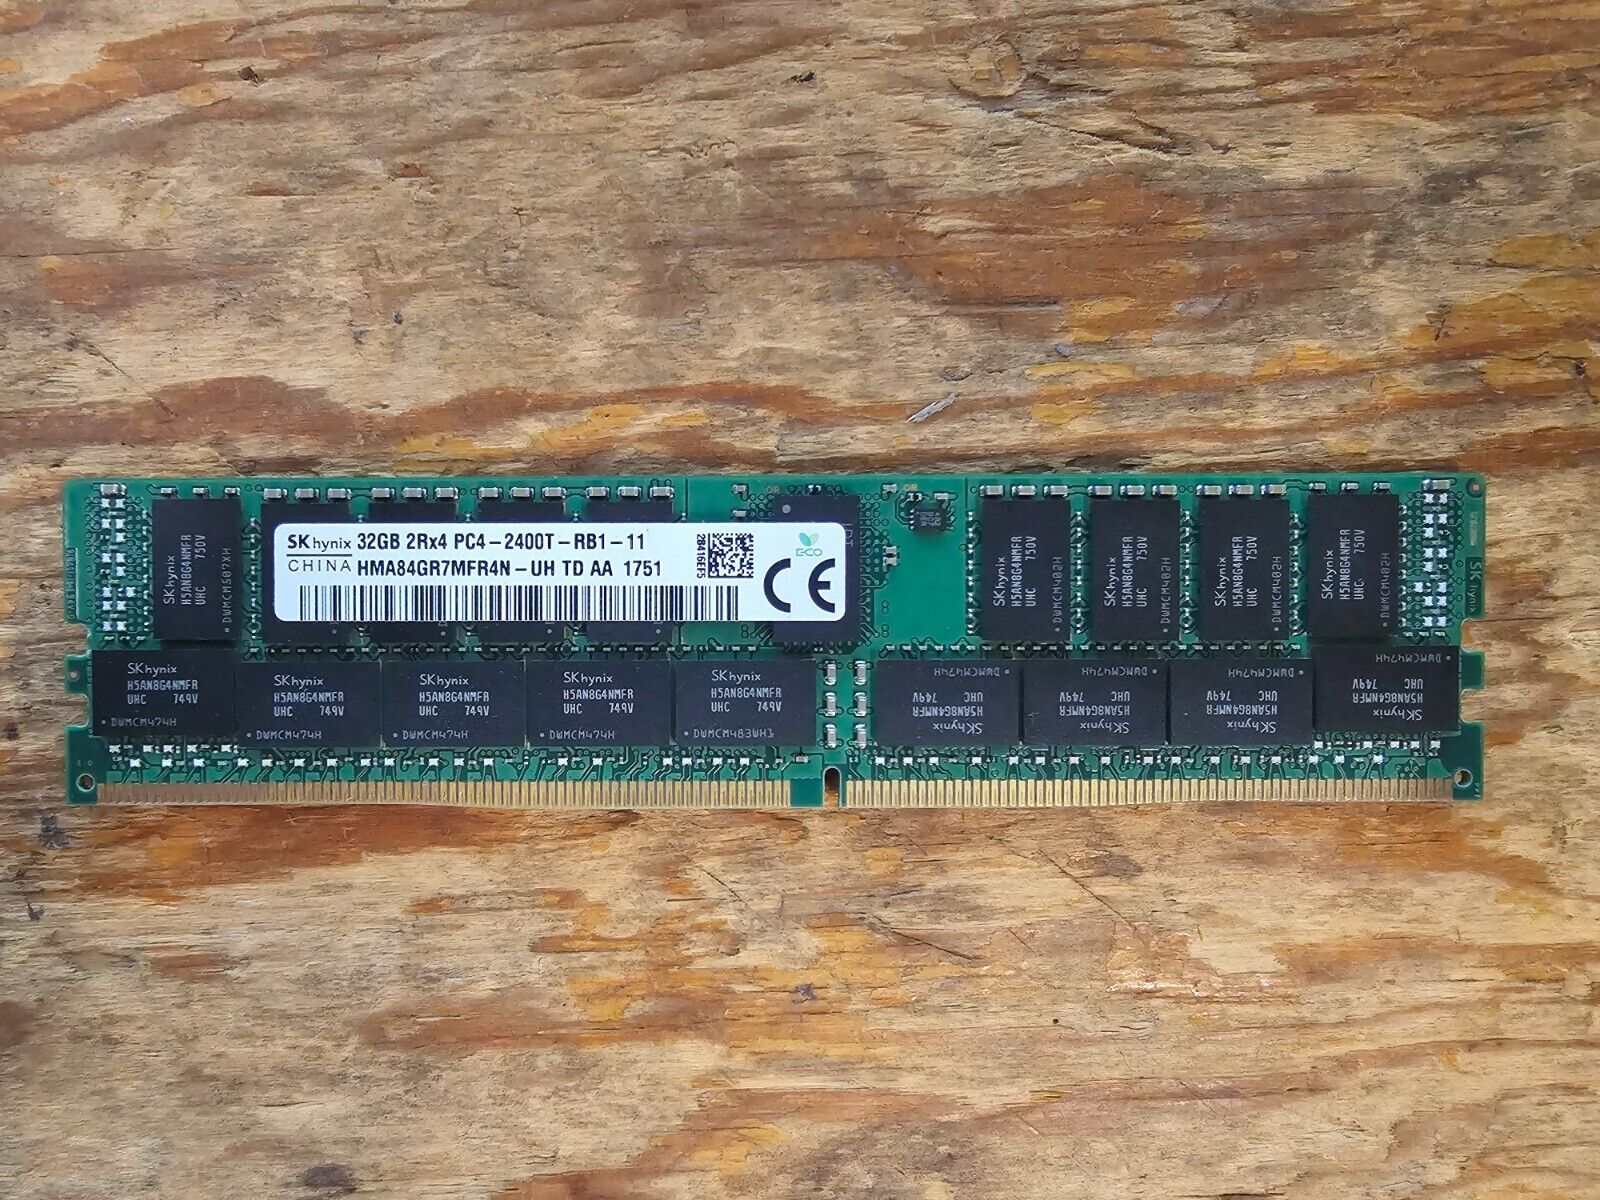 SK Hynix 32GB 2Rx4 PC4 (DDR4) 2400T-RB1-11 HMA84GR7MFR4N-UH TD AA 1751